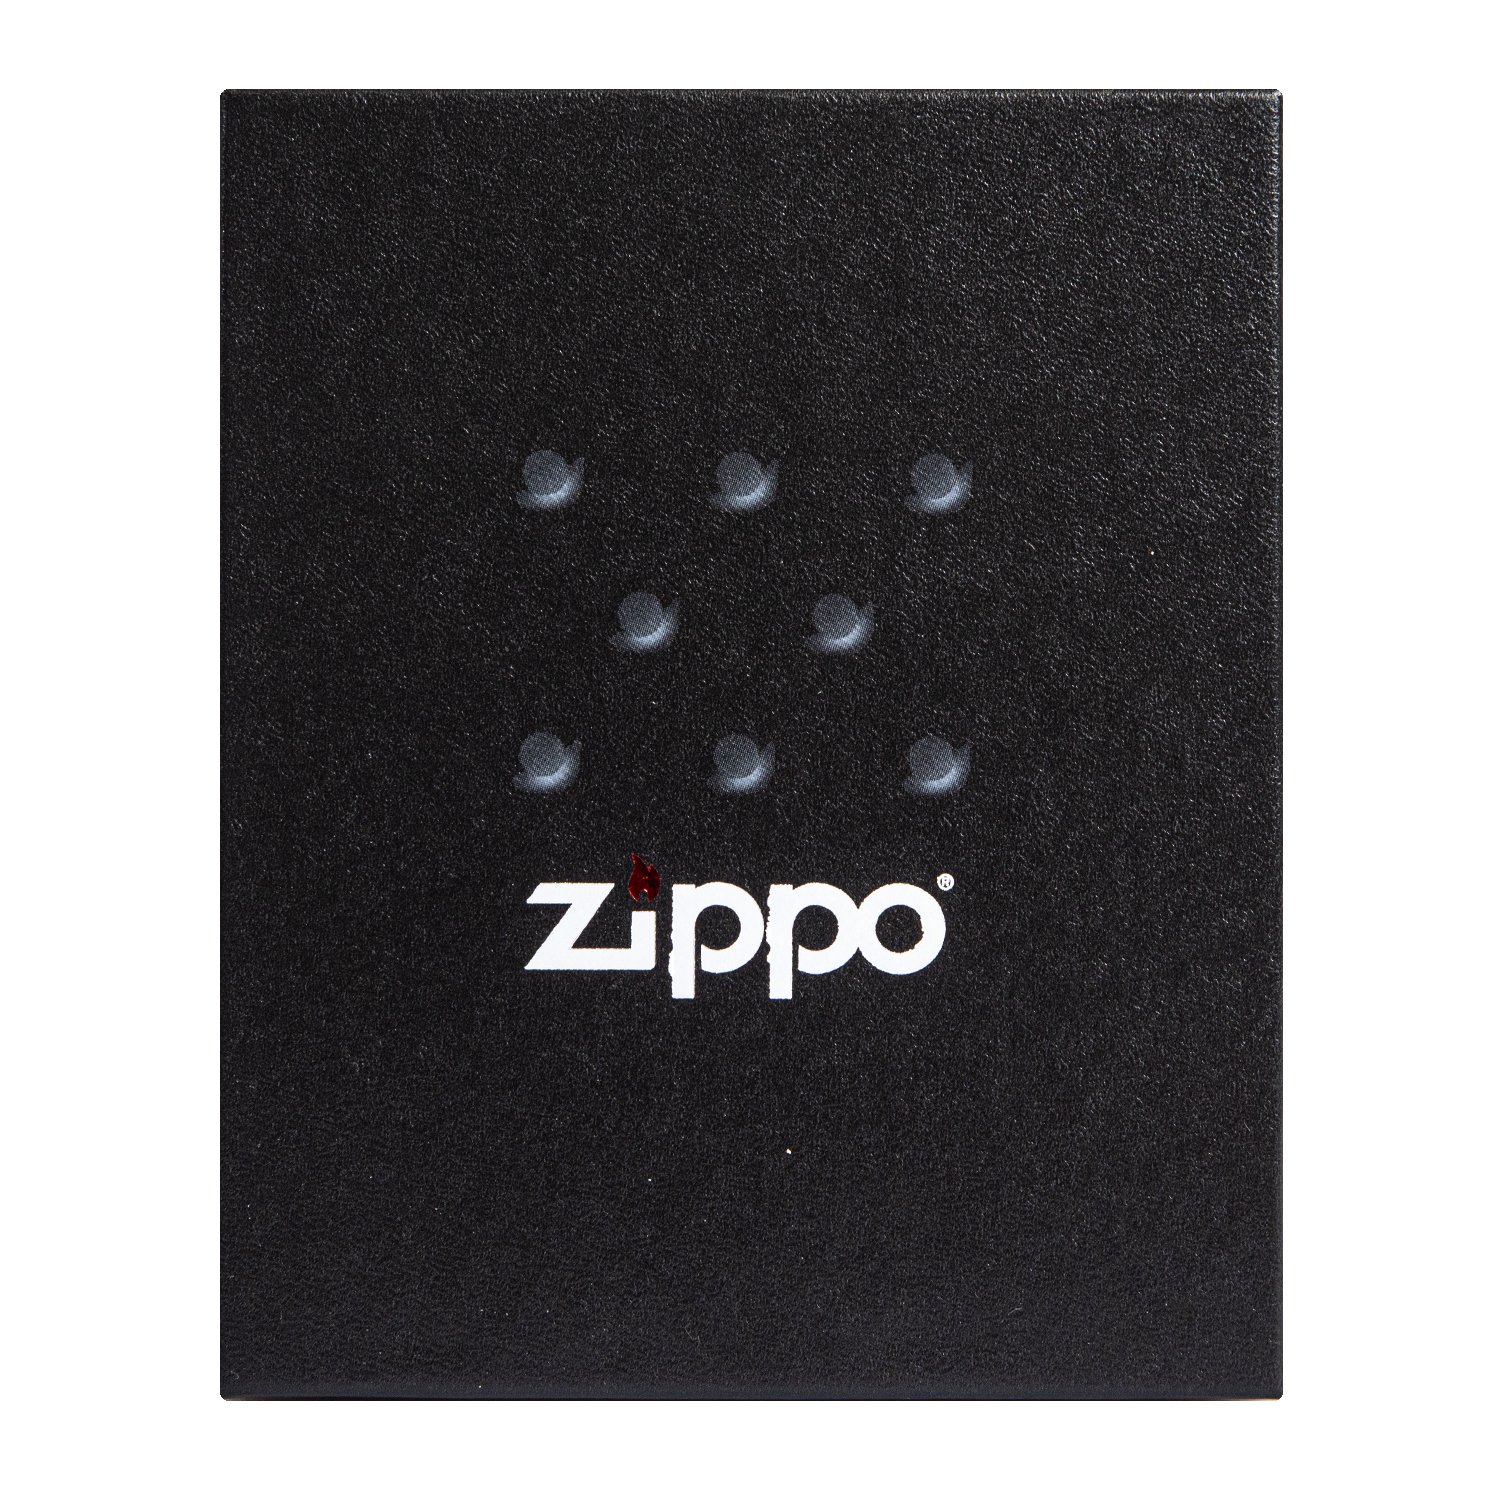 Zippo – Vergangenheitsspruch